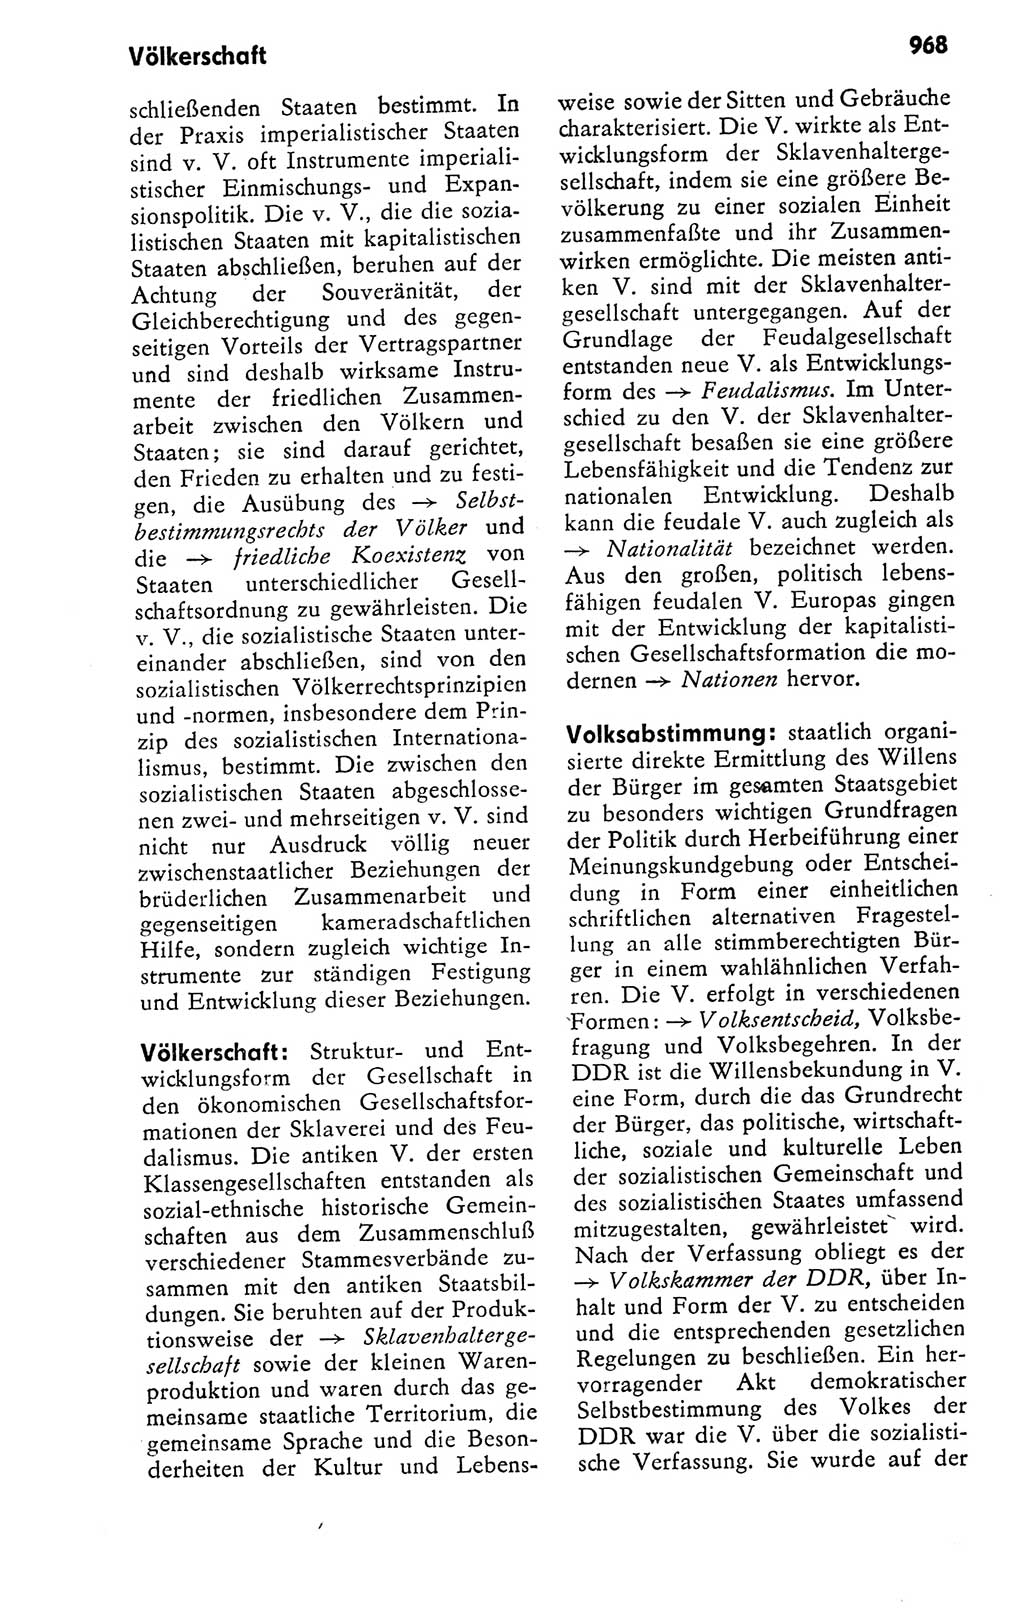 Kleines politisches Wörterbuch [Deutsche Demokratische Republik (DDR)] 1978, Seite 968 (Kl. pol. Wb. DDR 1978, S. 968)